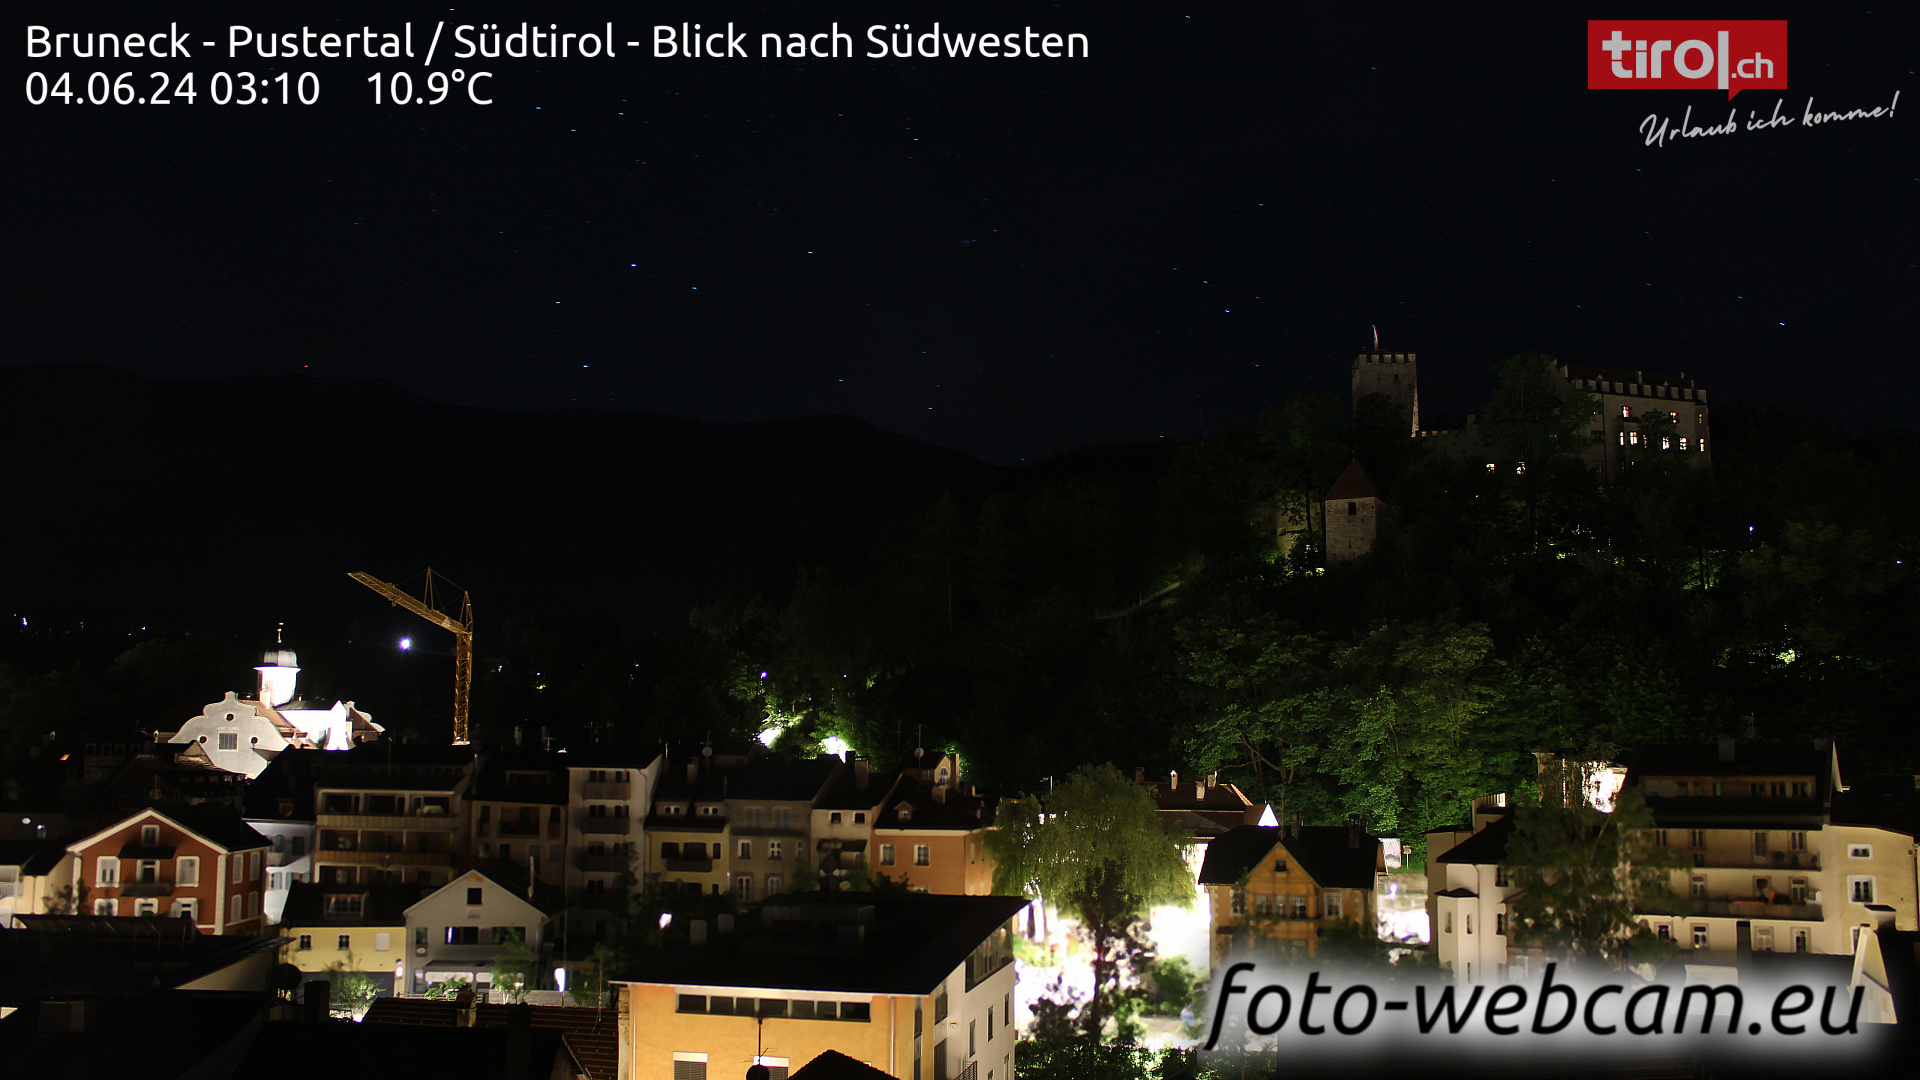 Bruneck Dom. 03:32